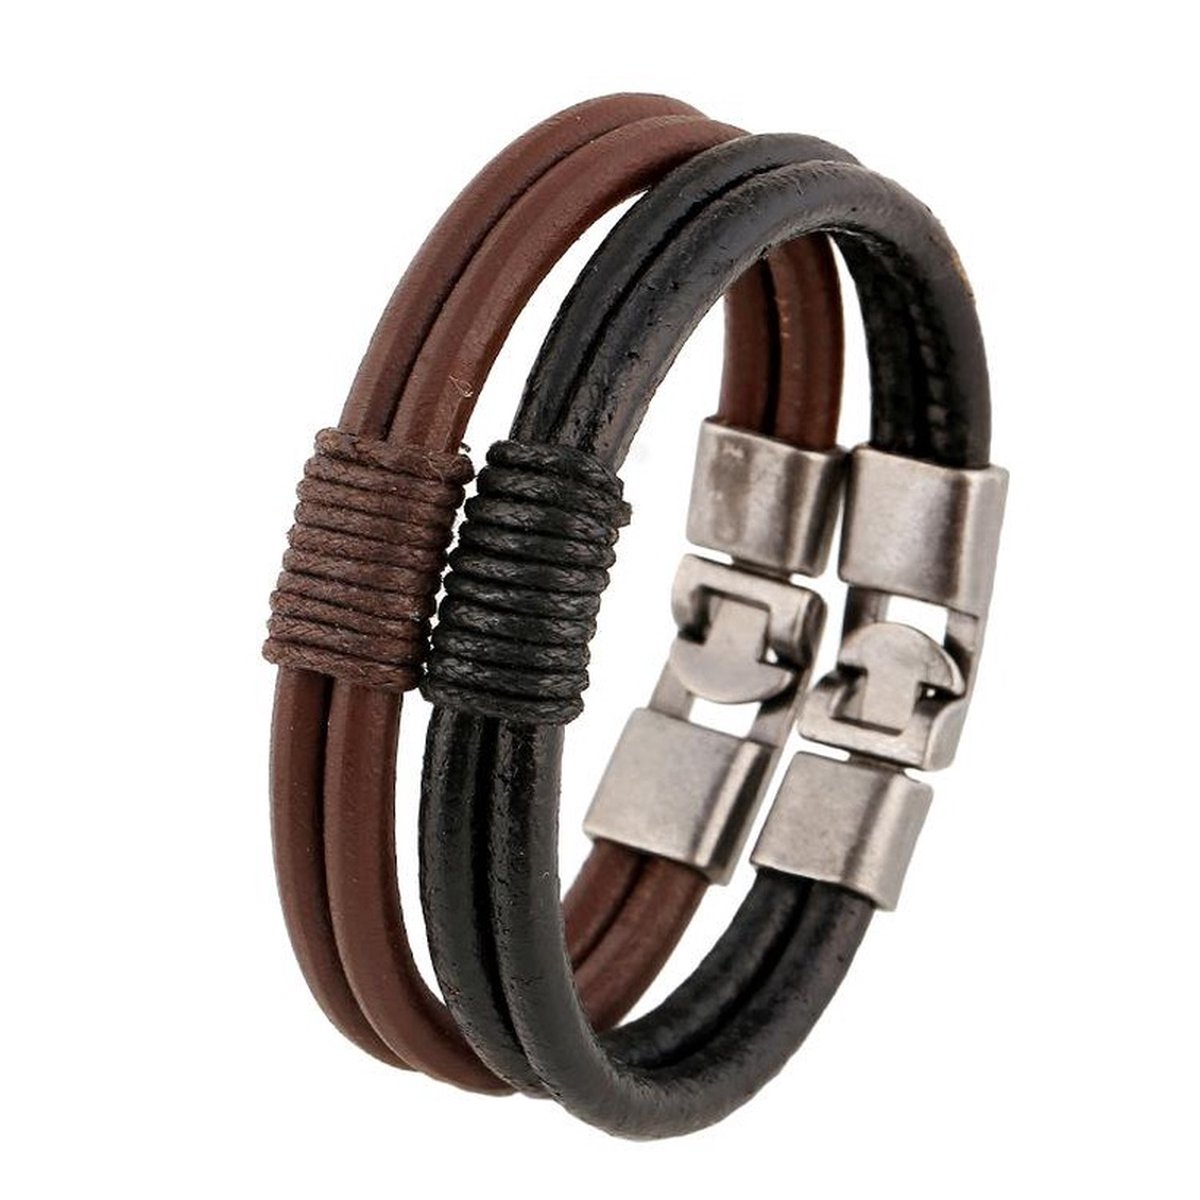 Megasieraden Zwarte Leren Armband met Stijlvolle Zilveren Accenten - Trendy Leren Armband